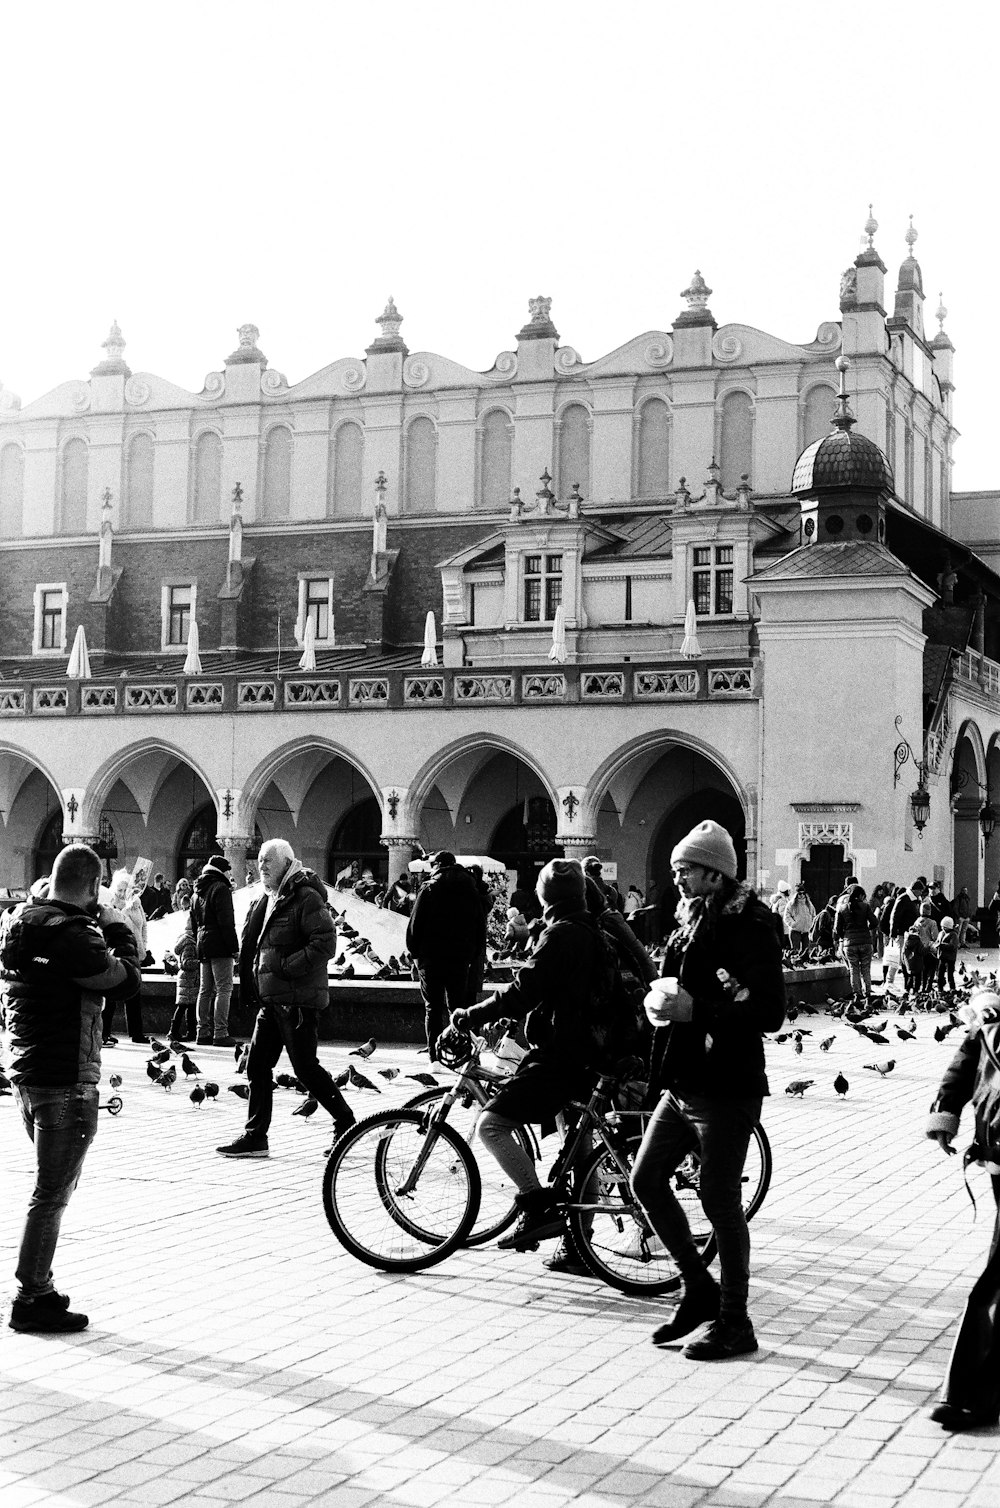 Una foto en blanco y negro de personas y bicicletas